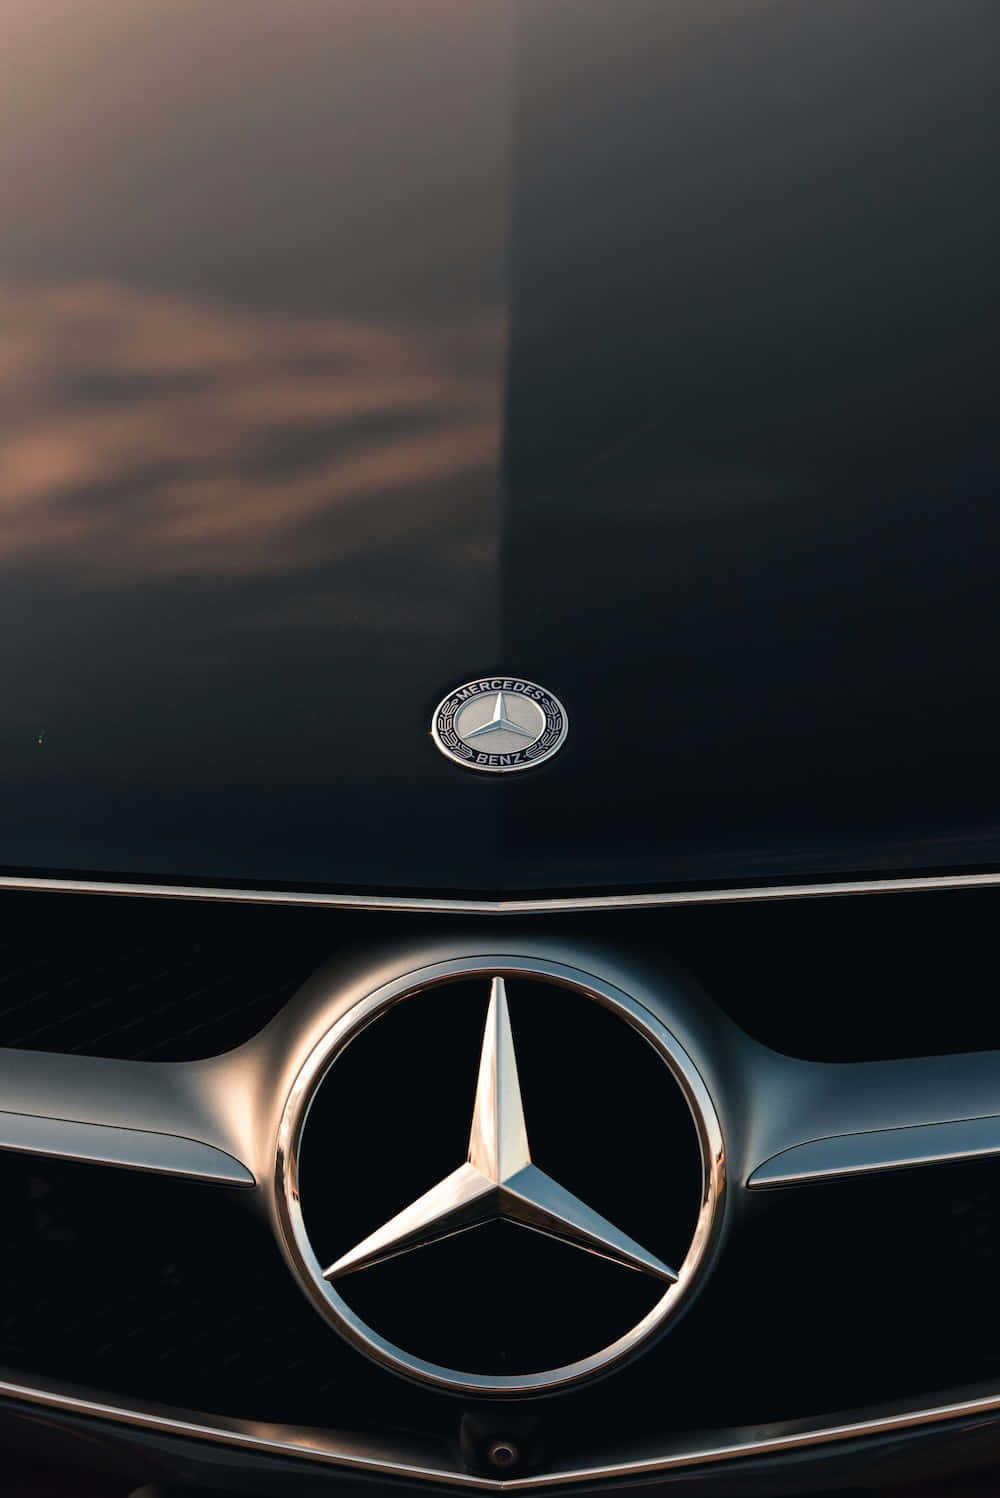 Mejorfondo De Pantalla De Mercedes Con Parachoques Brillante Y Logotipo.